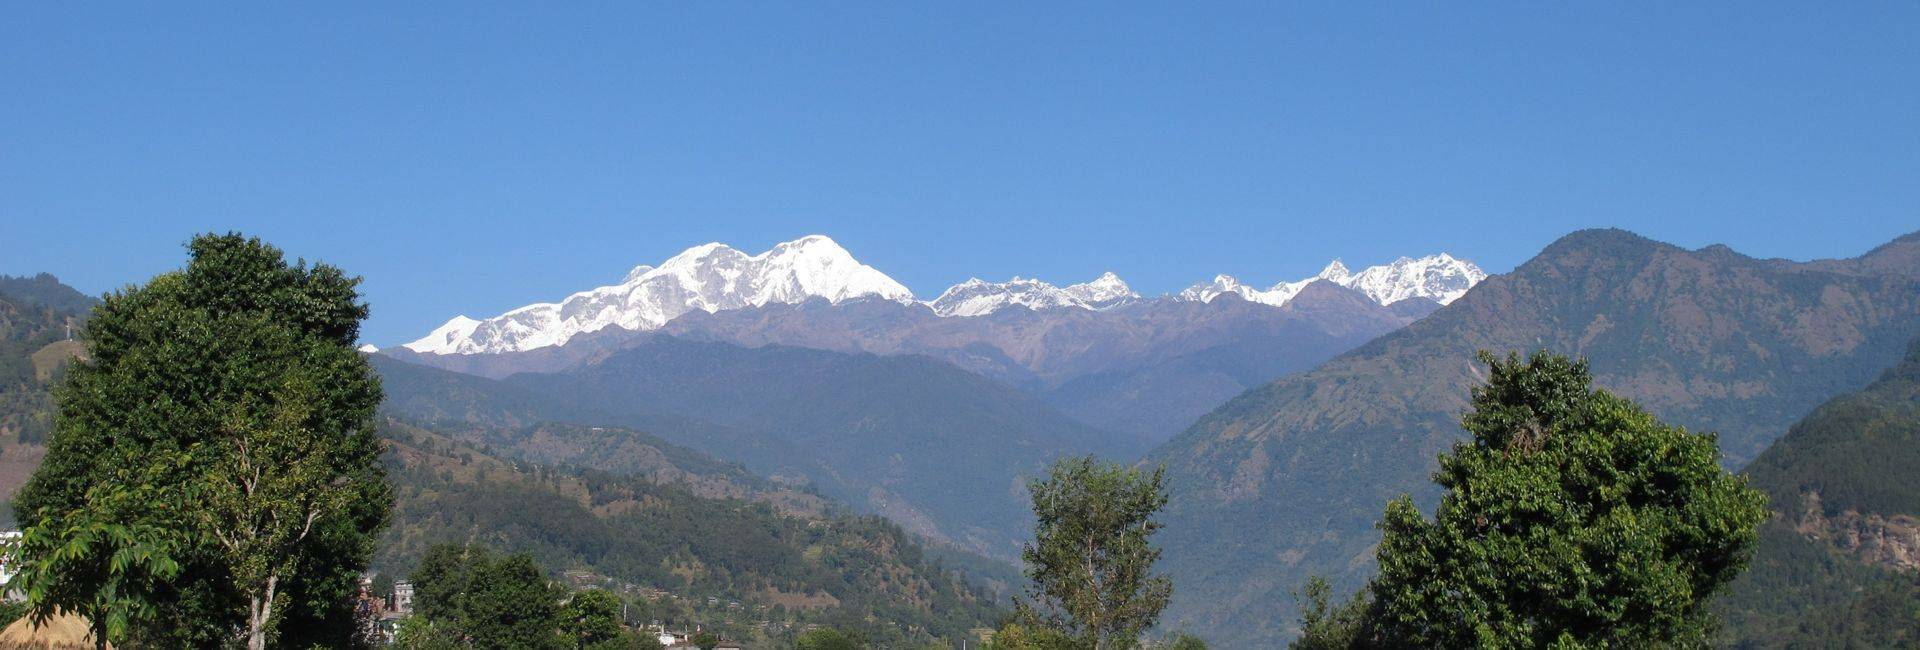 Manaslu Circuit trek in Nepal